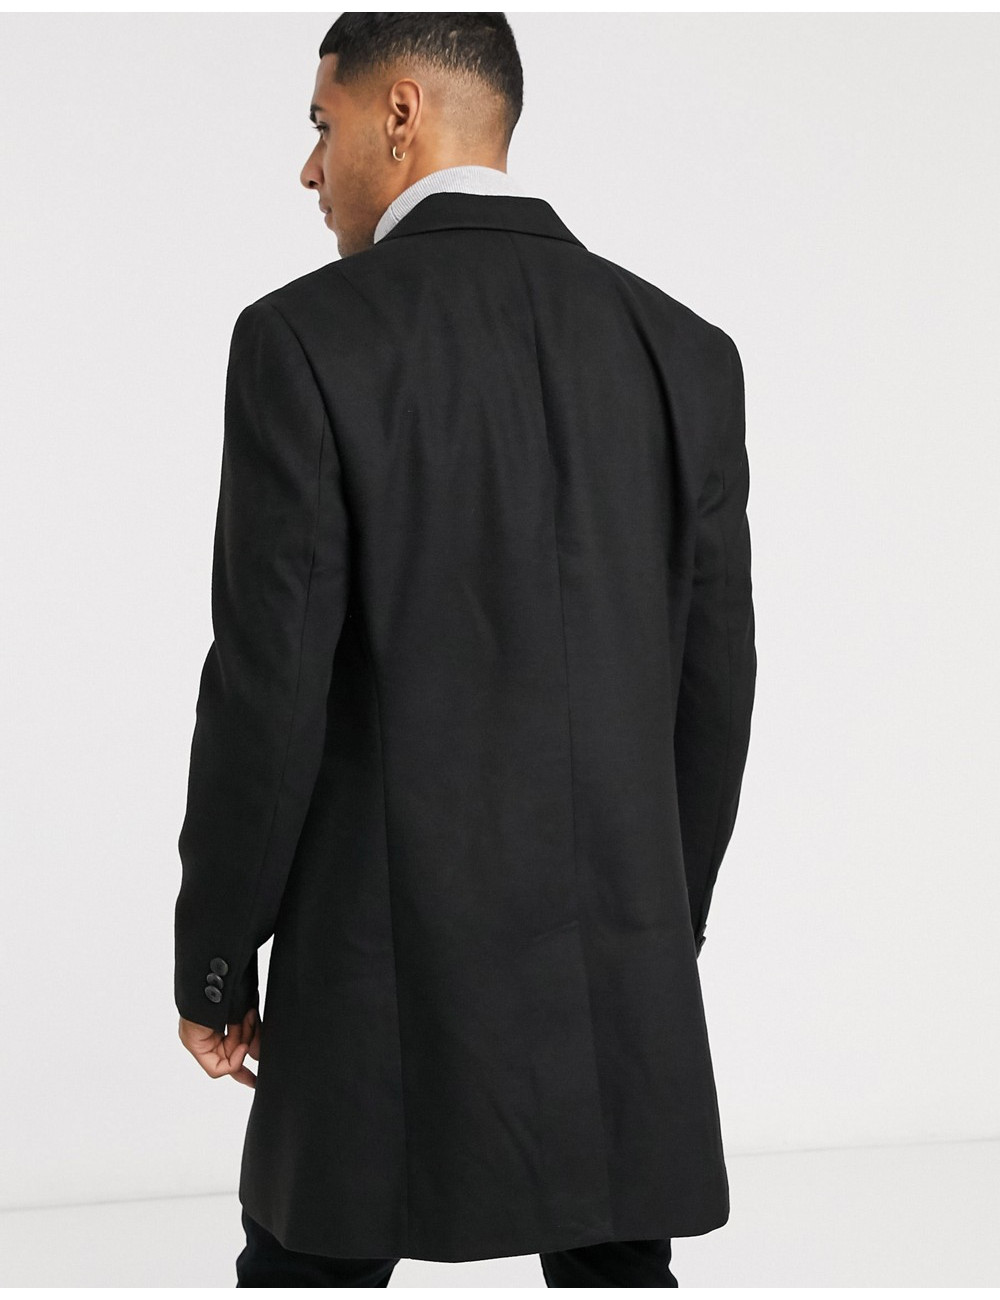 New Look overcoat in black